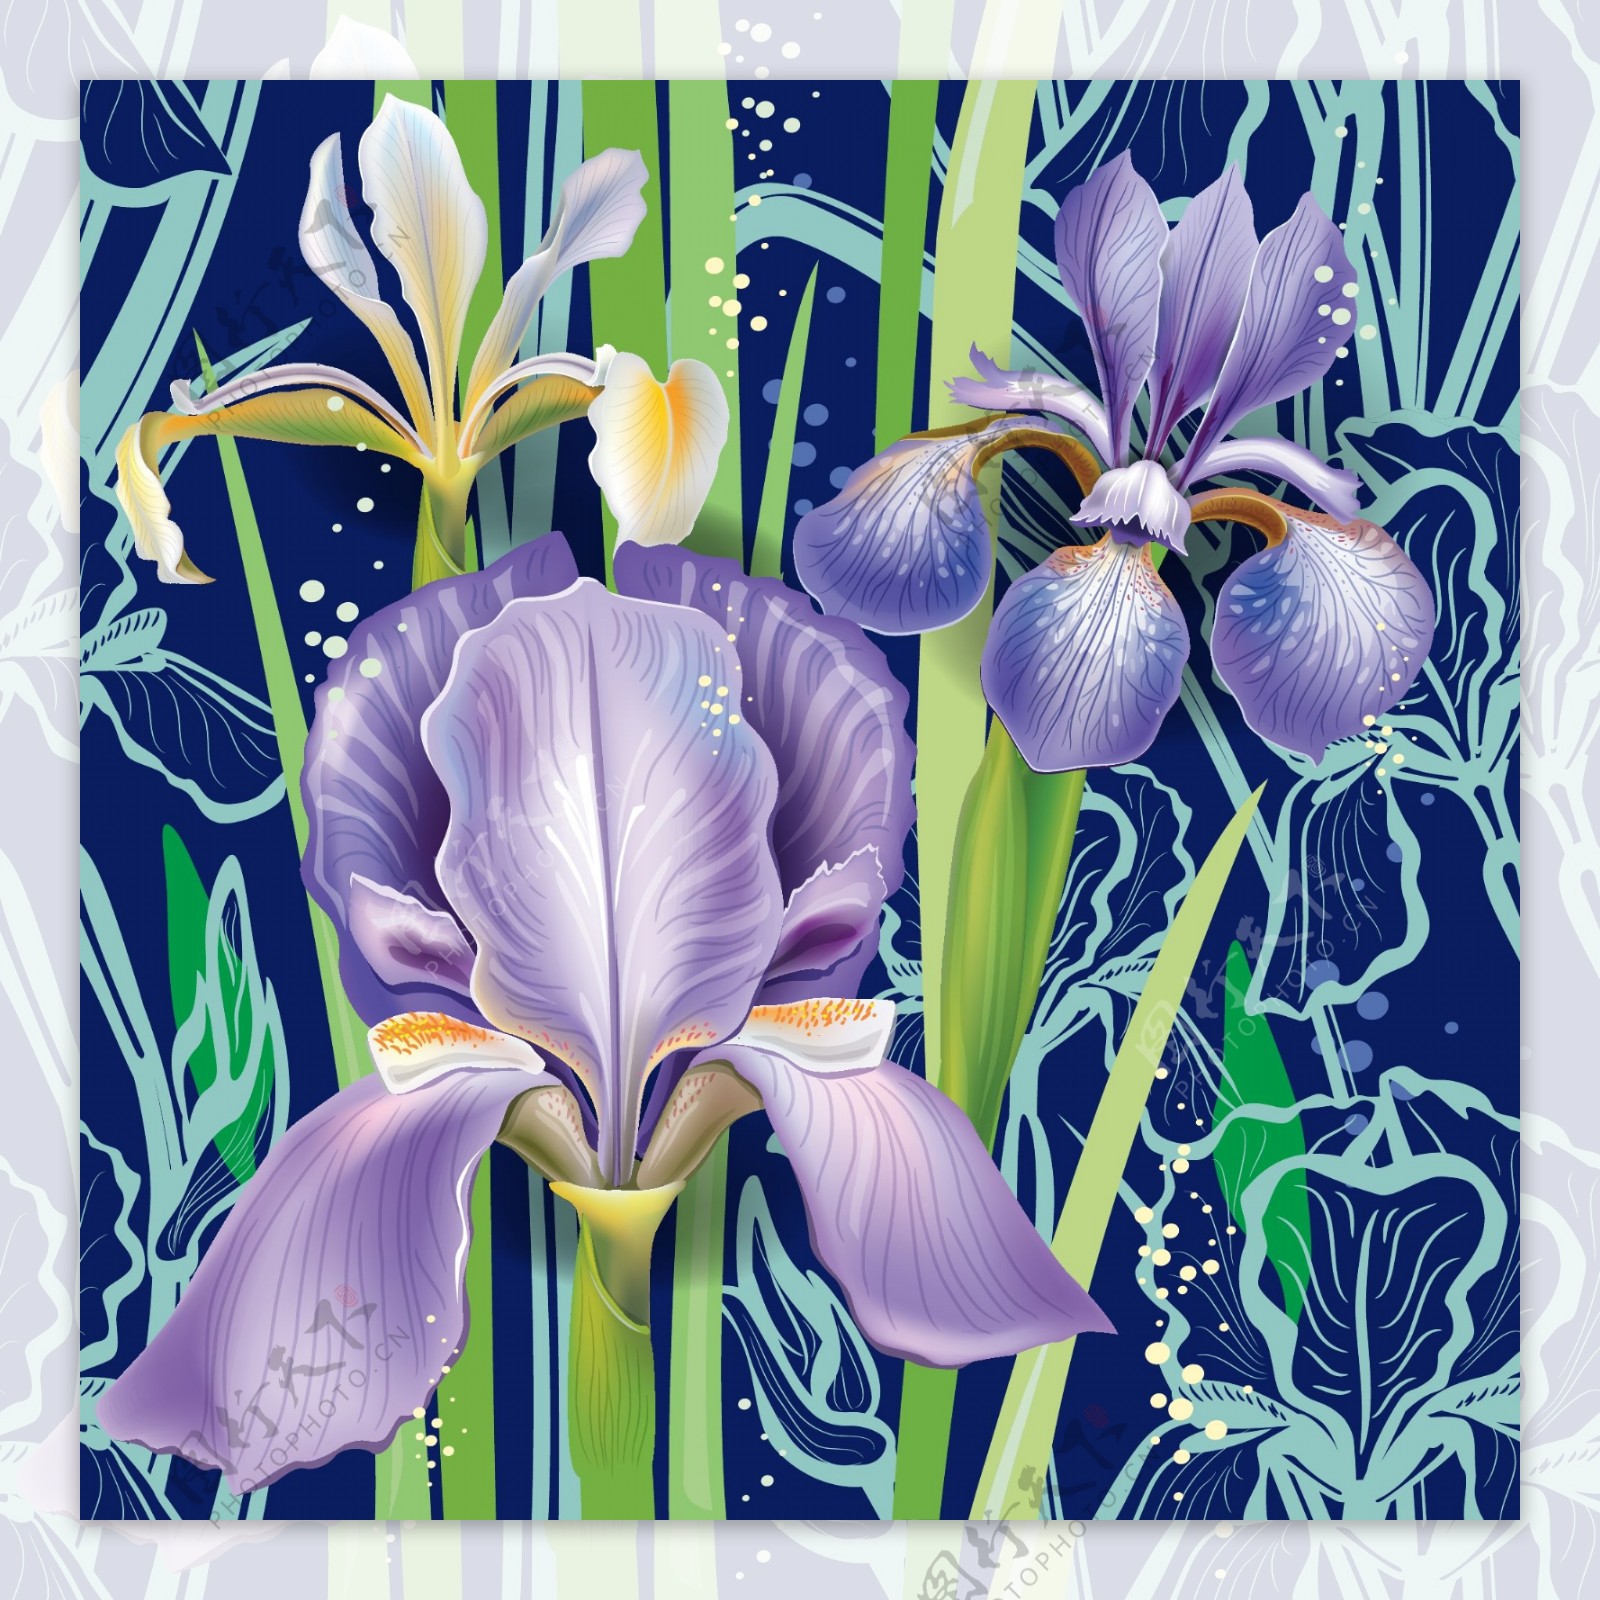 紫色兰花背景